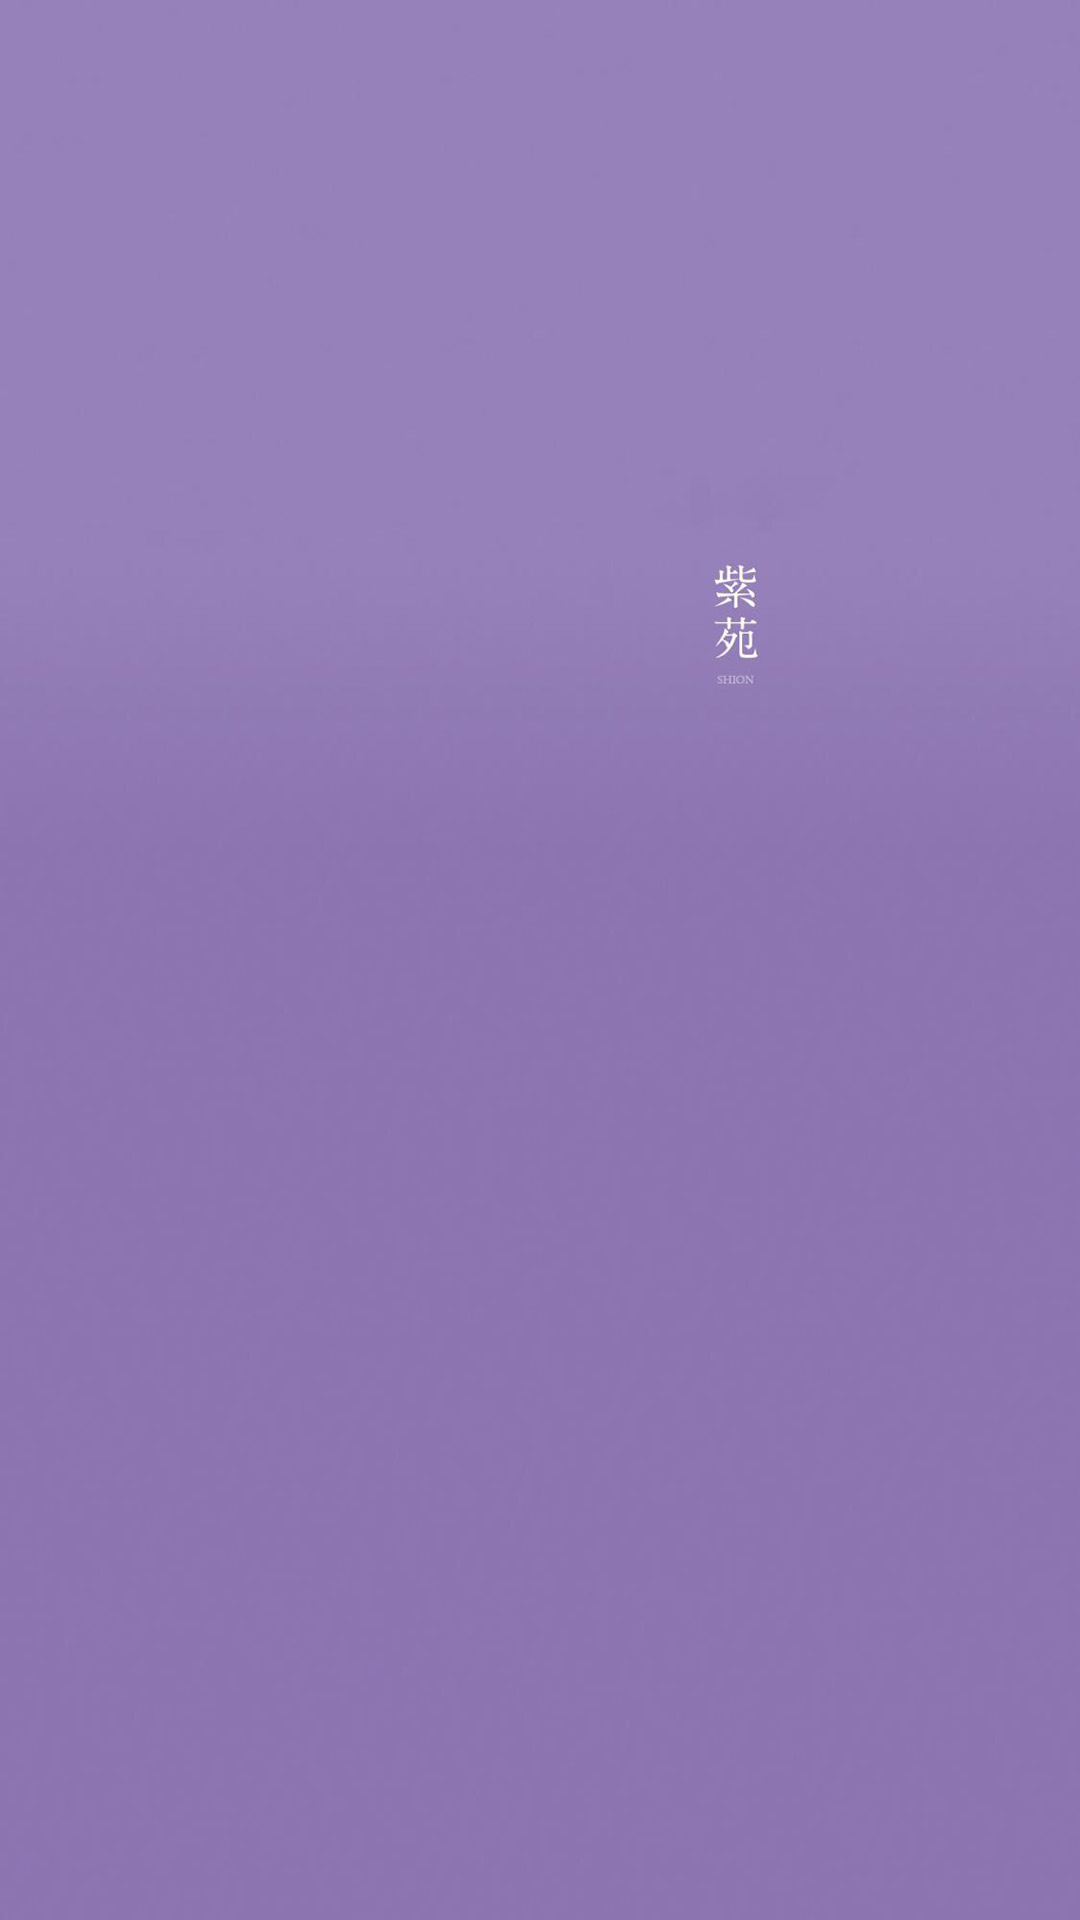 紫色系纯色背景手机壁纸 紫色系手机壁纸图片 三千图片网